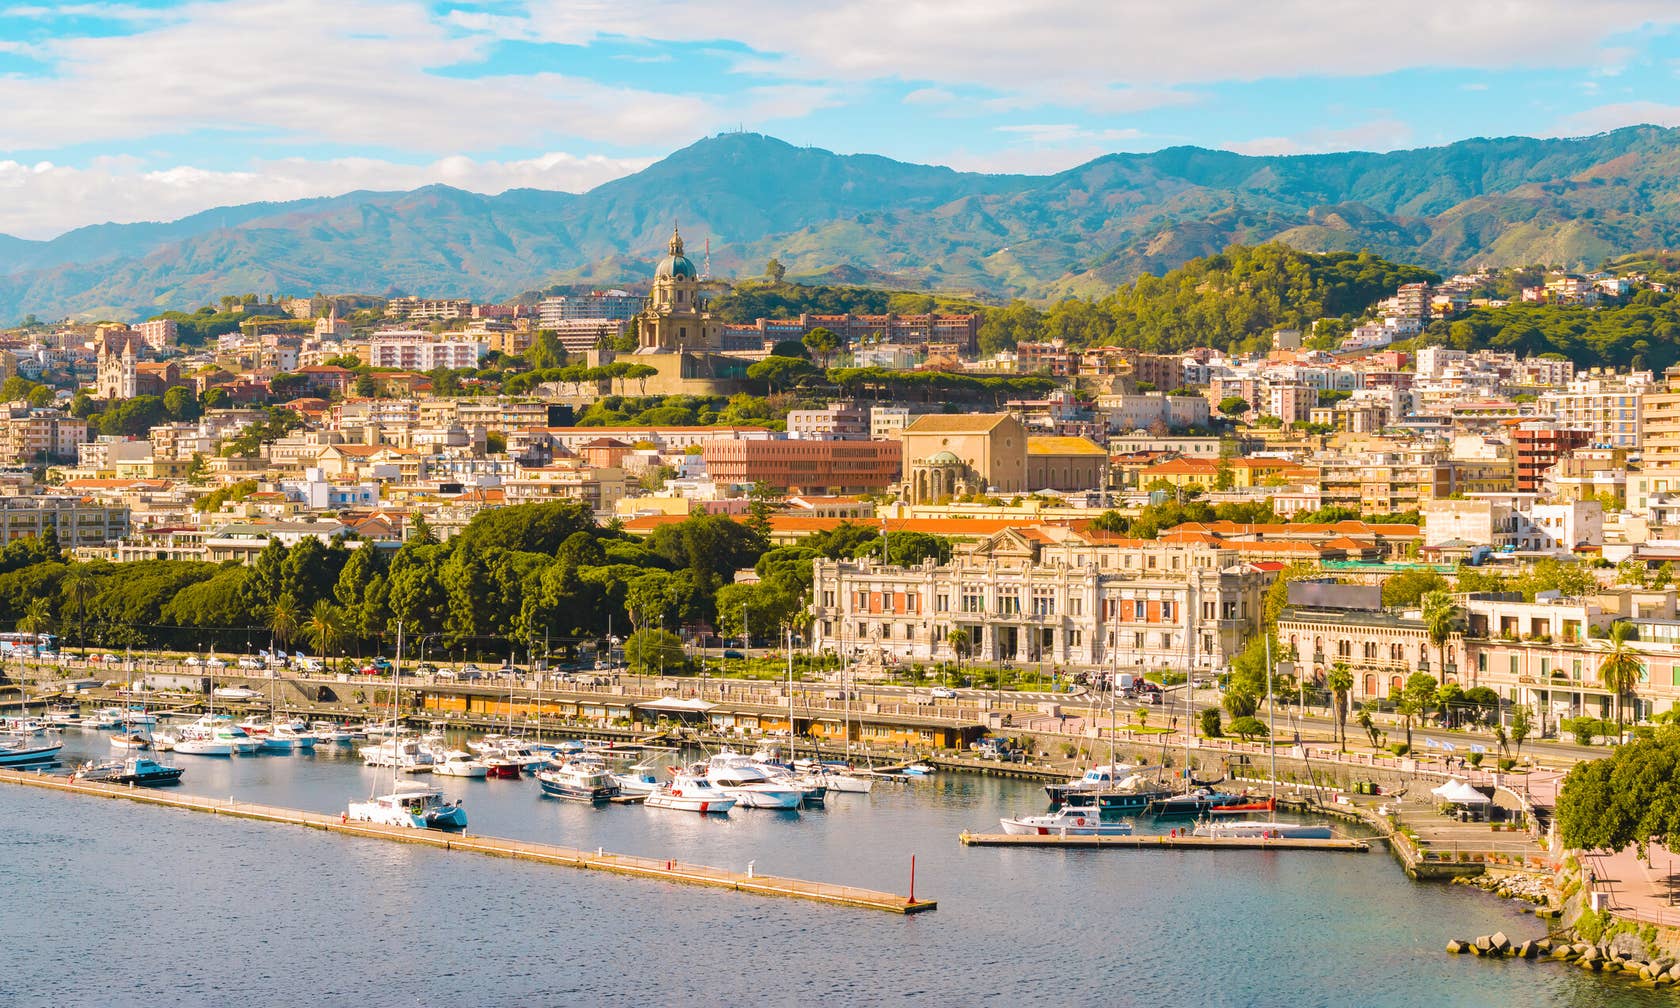 Ενοικιαζόμενοι χώροι για διακοπές στην τοποθεσία Σικελία